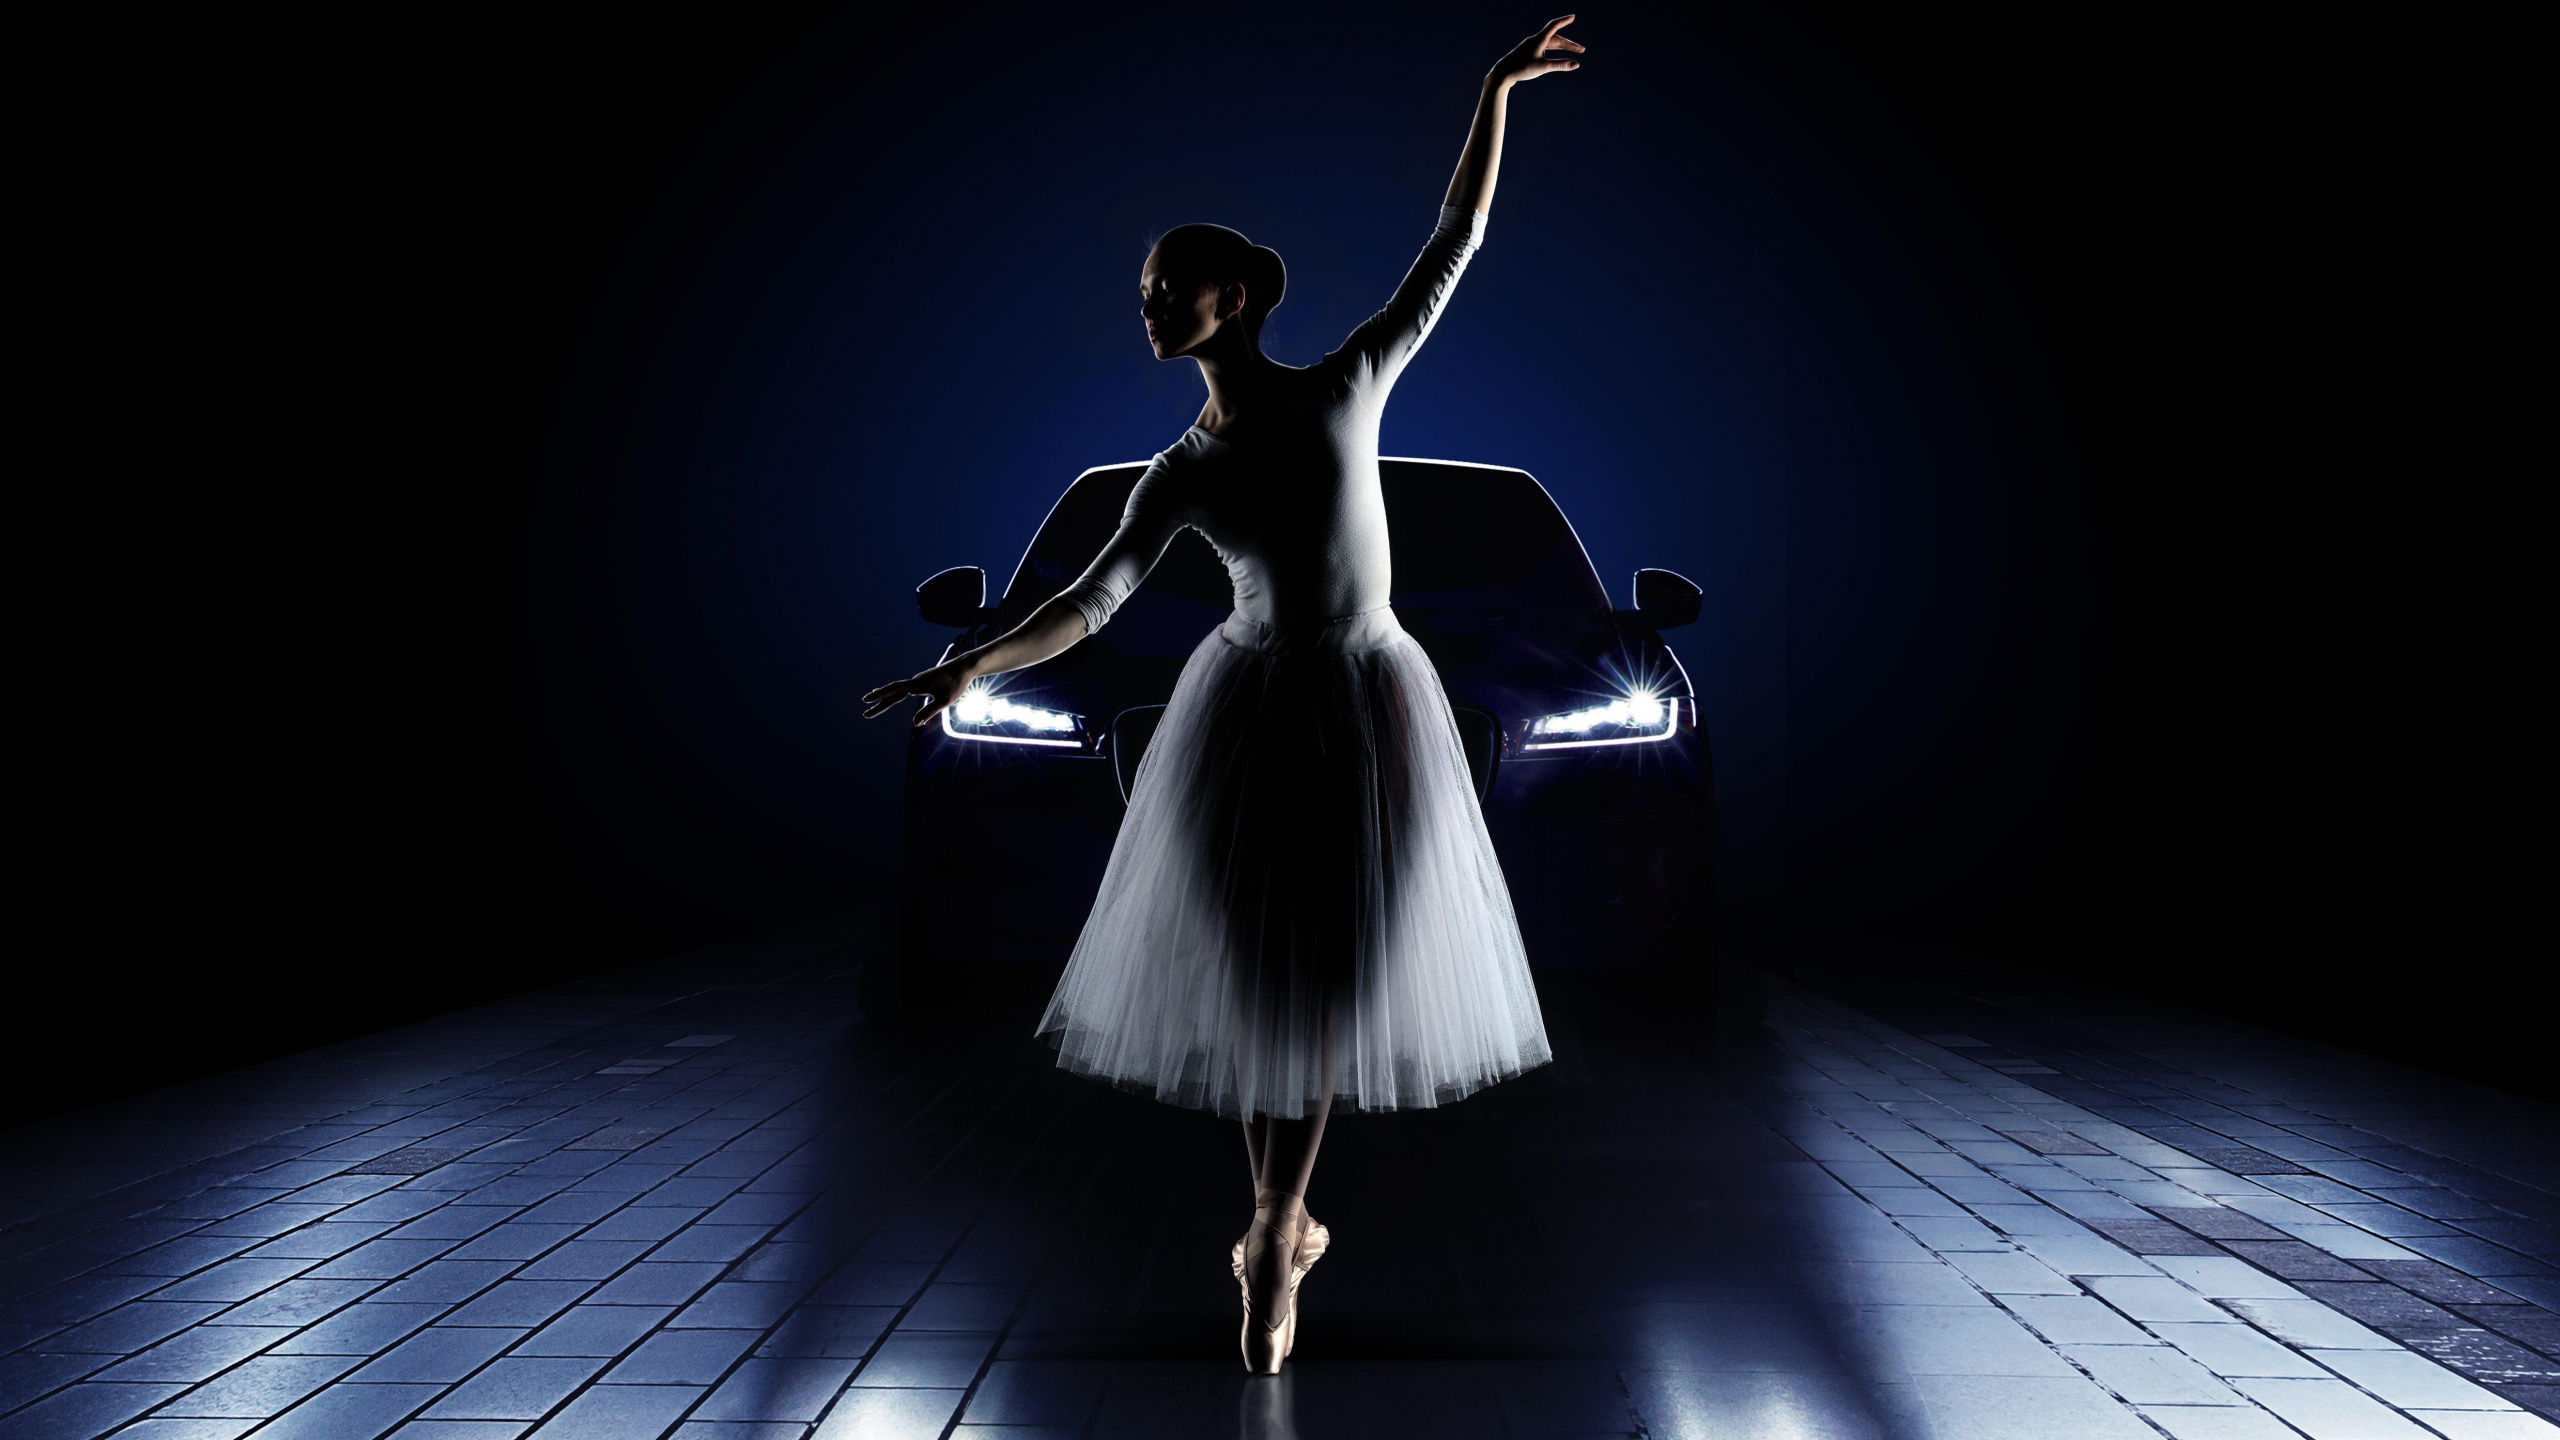 芭蕾舞团, 光, 舞蹈演员, 跳舞, 阶段 壁纸 2560x1440 允许